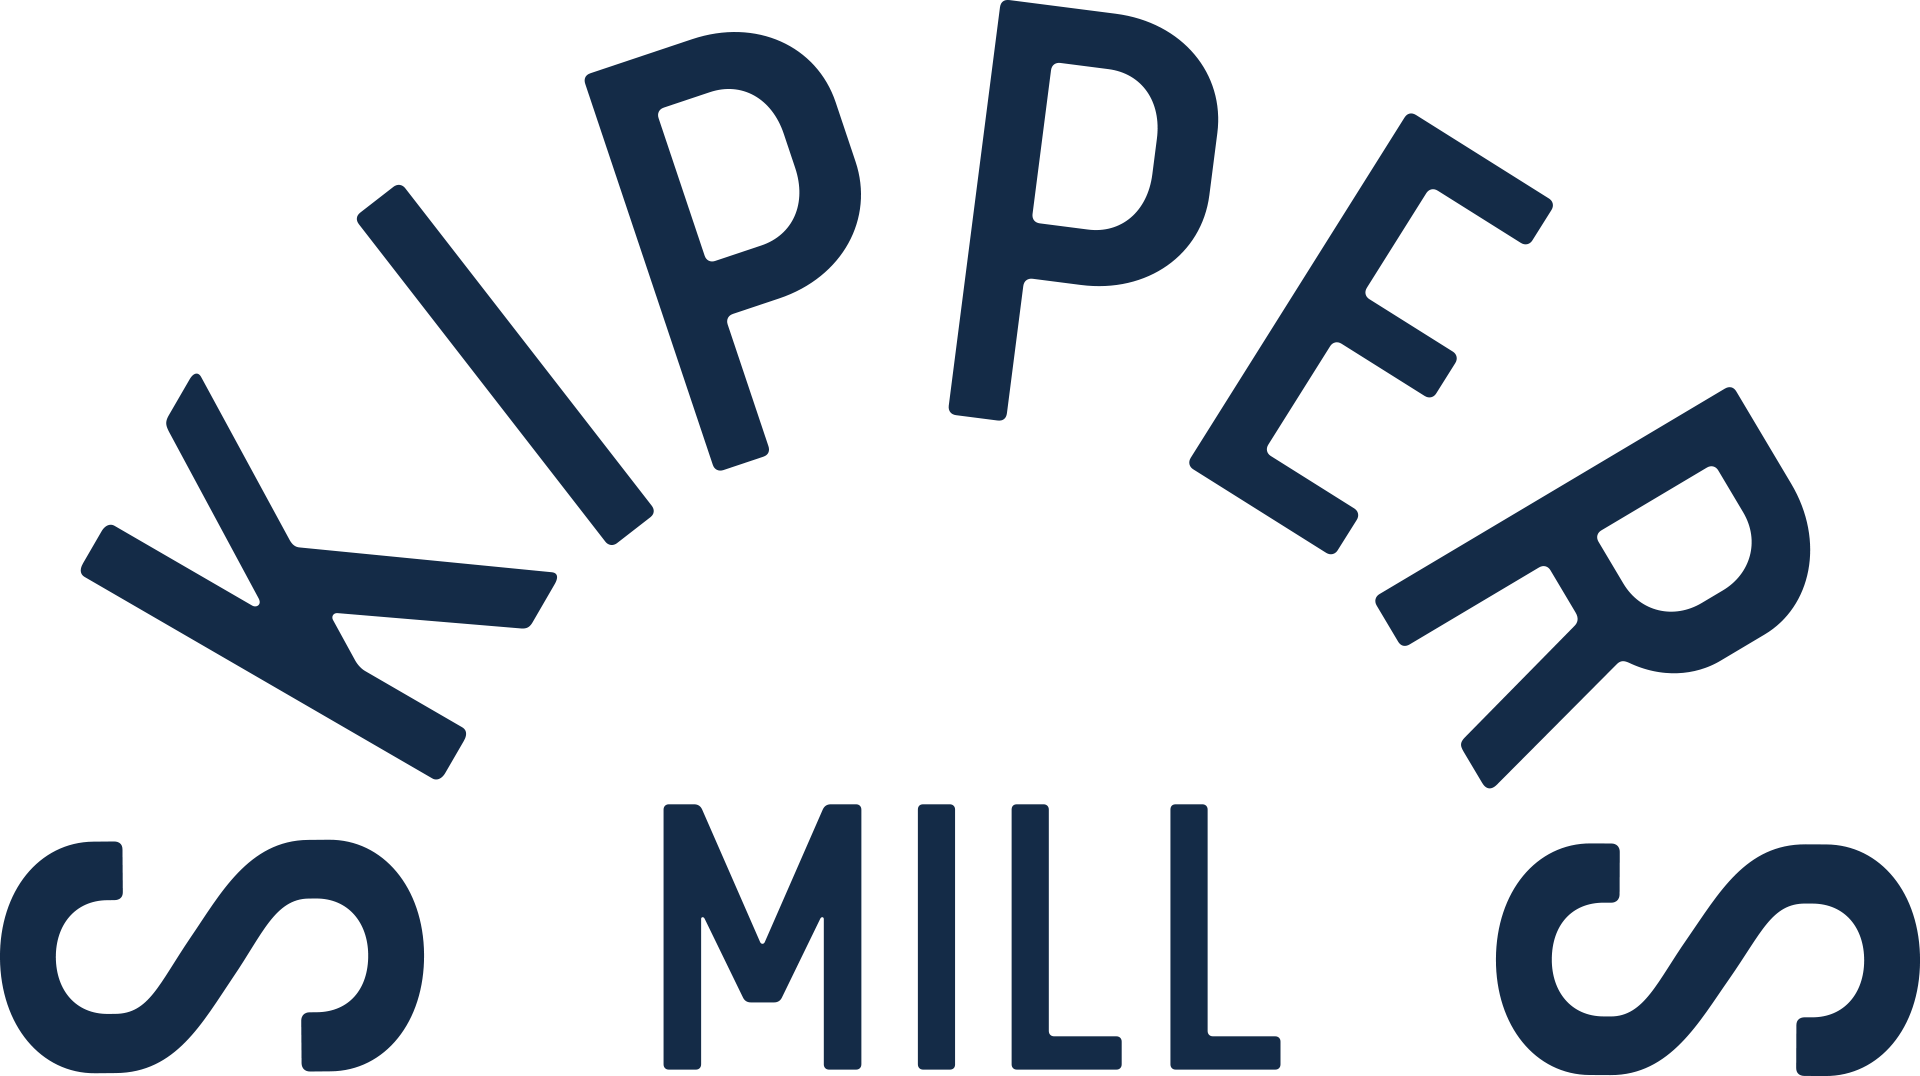 Skippers Mill